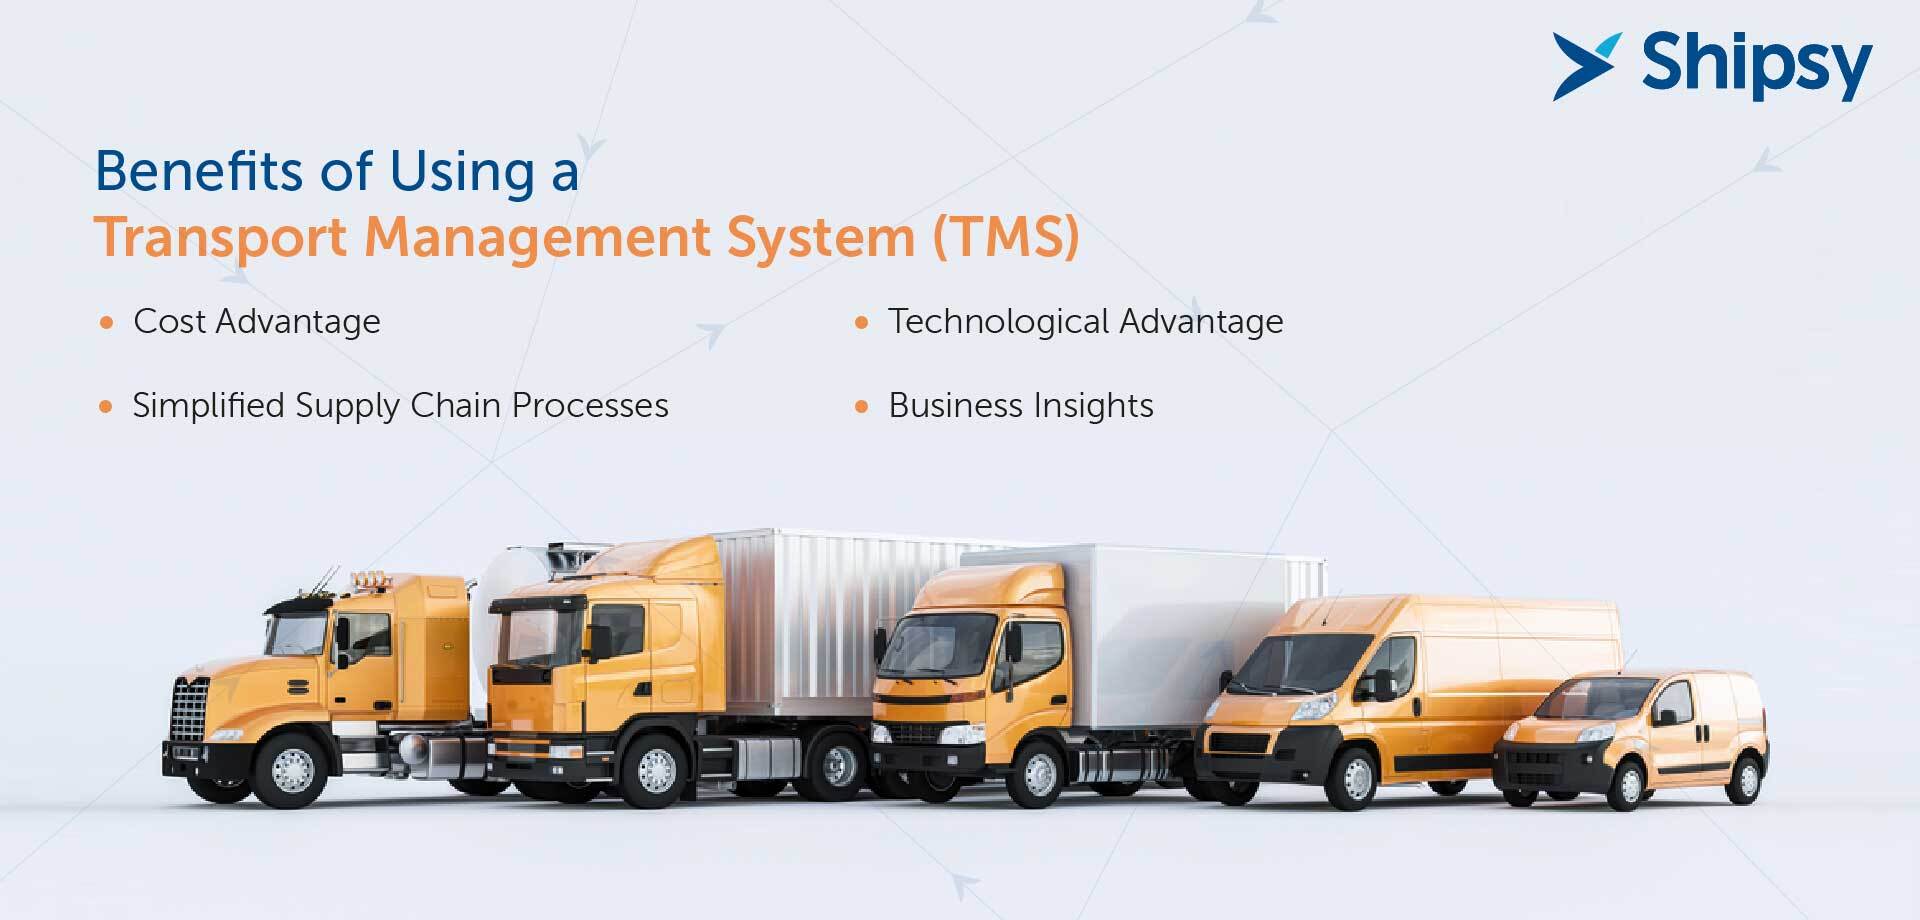 Transport management system benefits